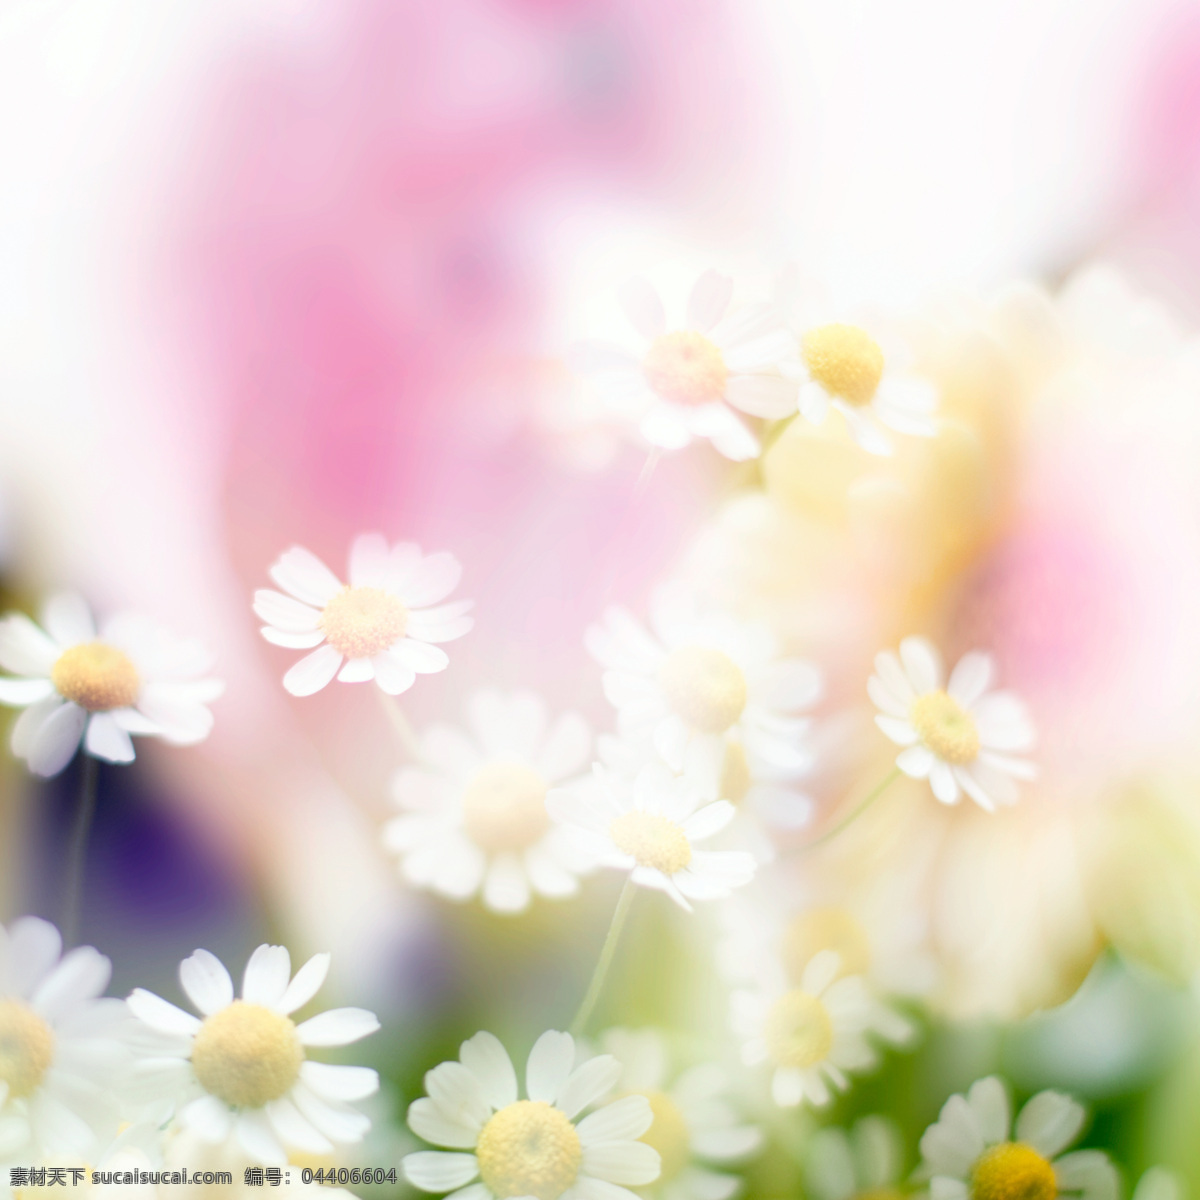 梦幻鲜花背景 春天 春季 鲜花背景 花朵 花卉 梦幻背景 花草树木 生物世界 白色